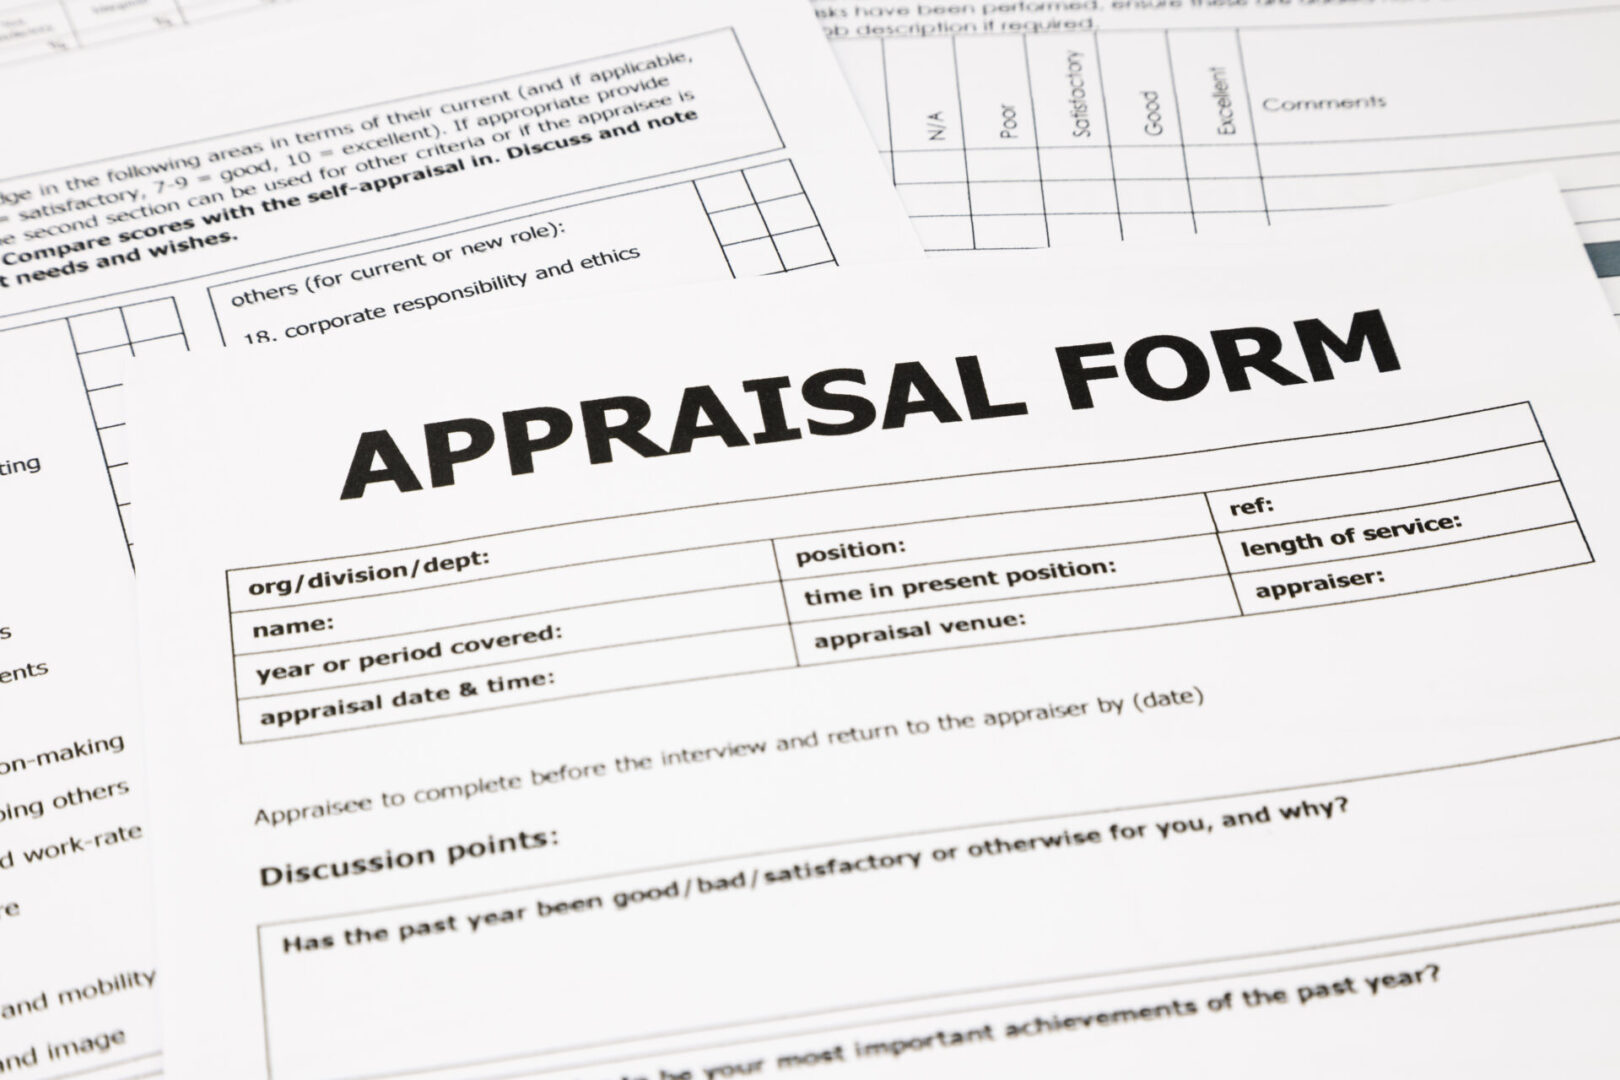 A close up of an appraisal form